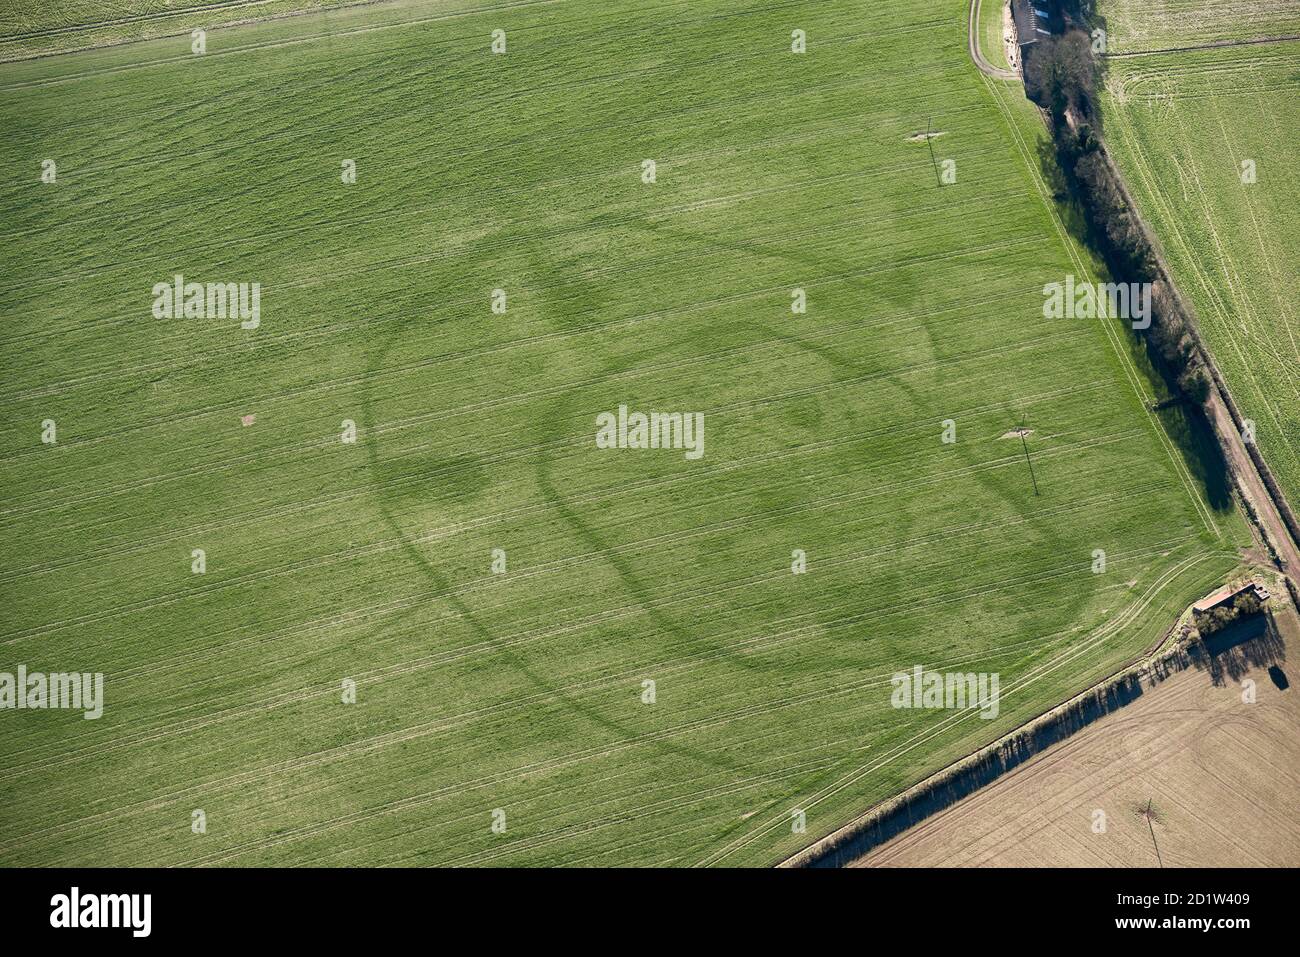 Marque de récolte de l'enceinte à double point de piqué Iron Age, près de South Wondston, Hampshire 2018. Vue aérienne. Banque D'Images